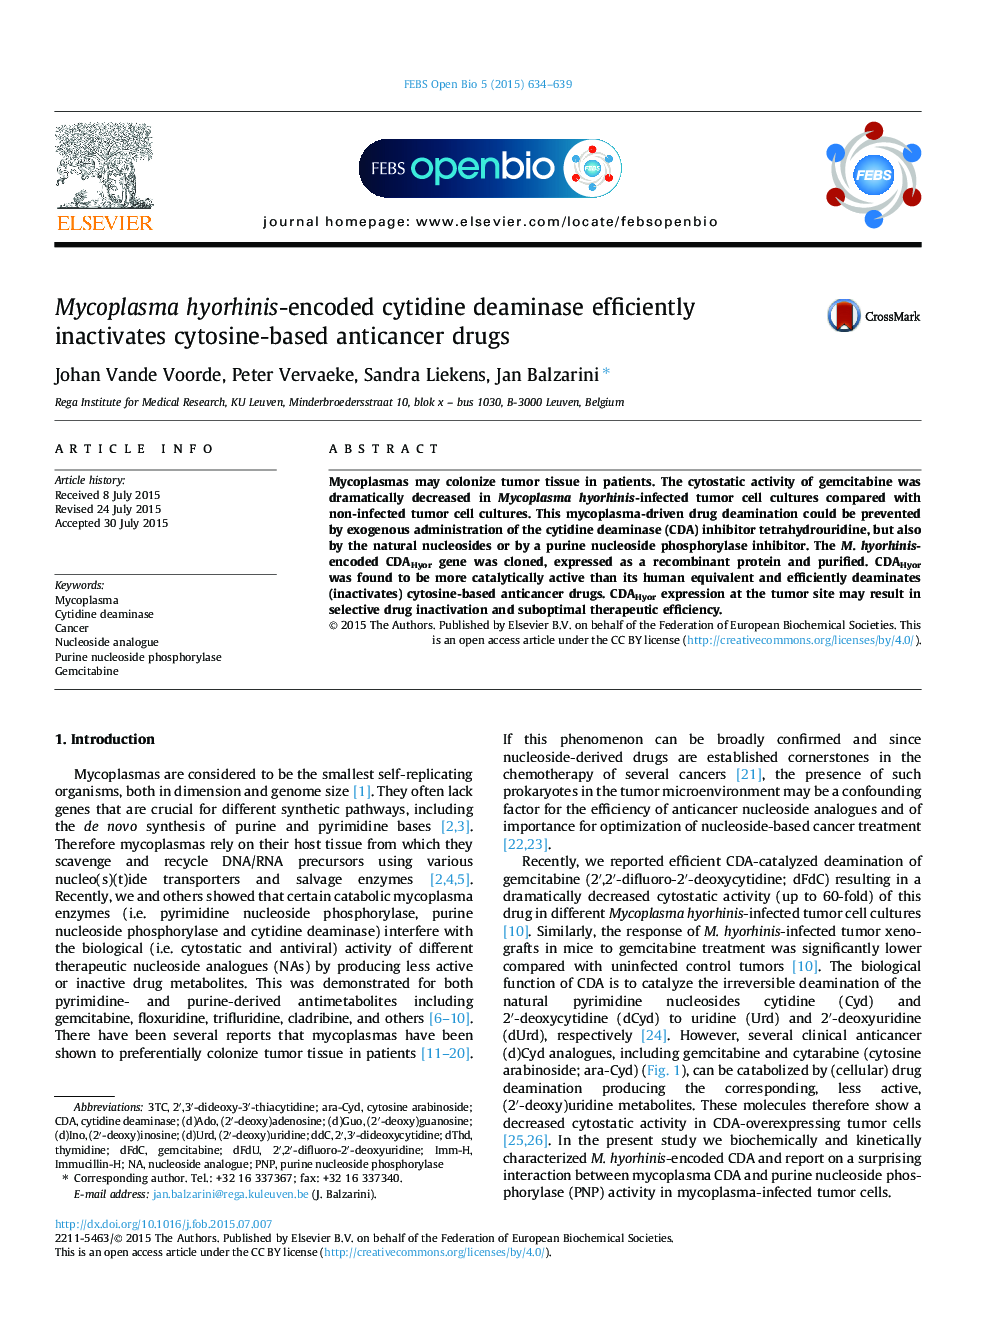 Mycoplasma hyorhinis-encoded cytidine deaminase efficiently inactivates cytosine-based anticancer drugs